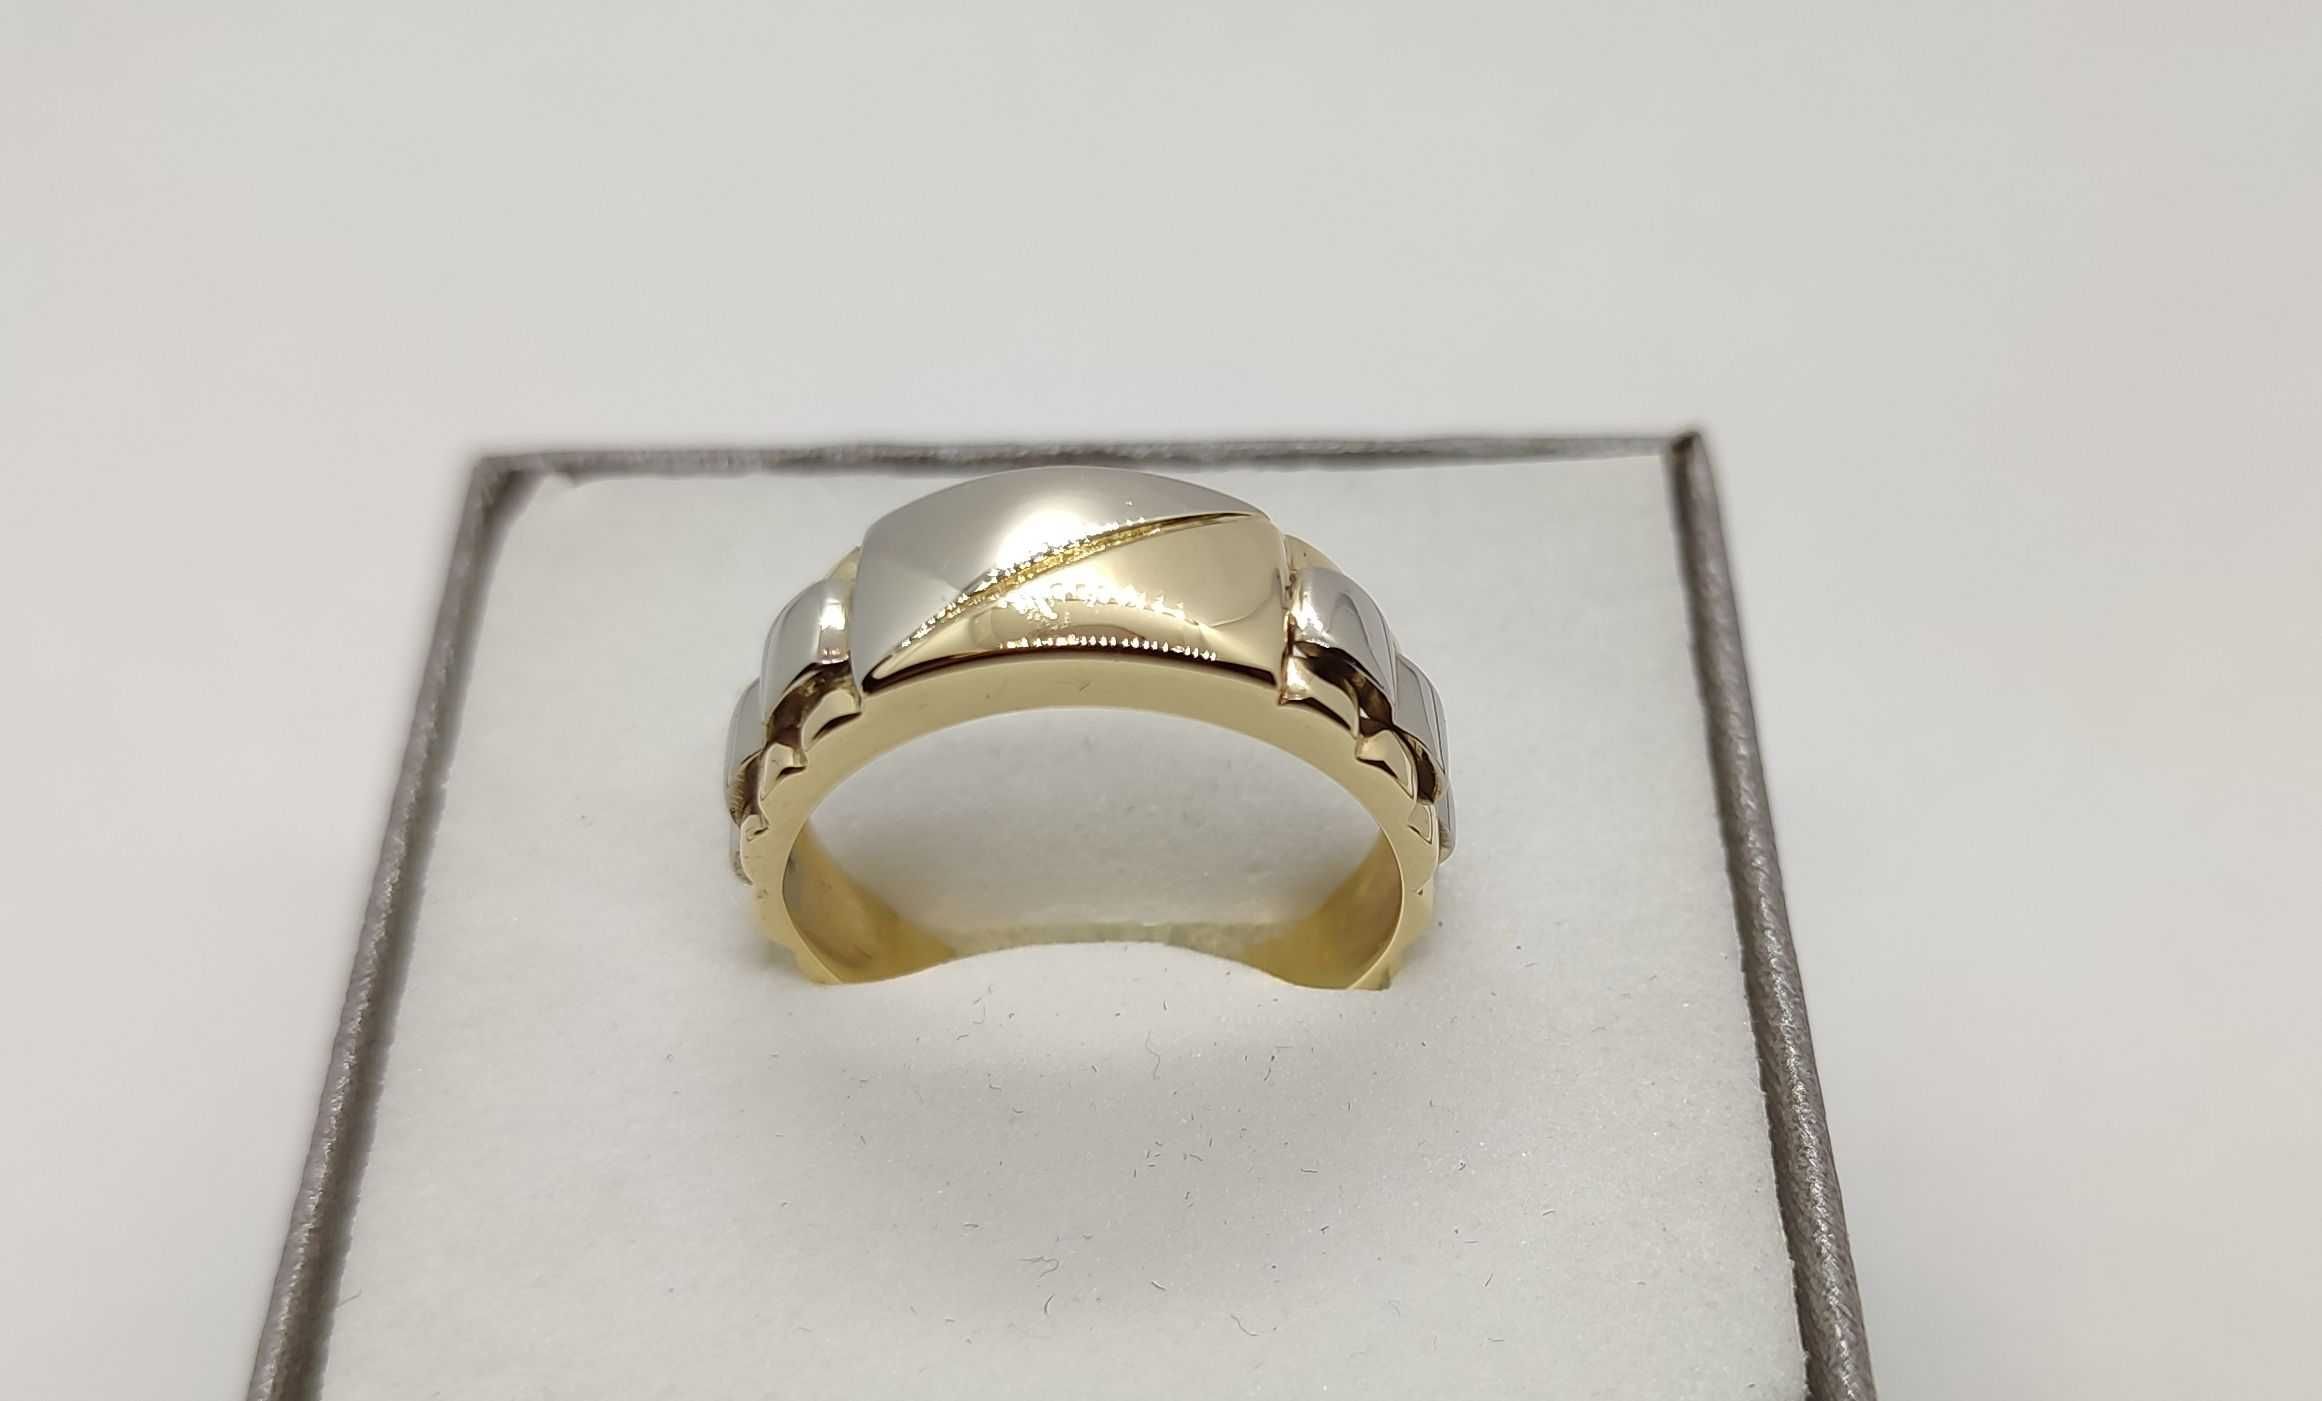 Przepiękny złoty pierścionek biało-żółty unikat 6,15g p585 r.18 / LID